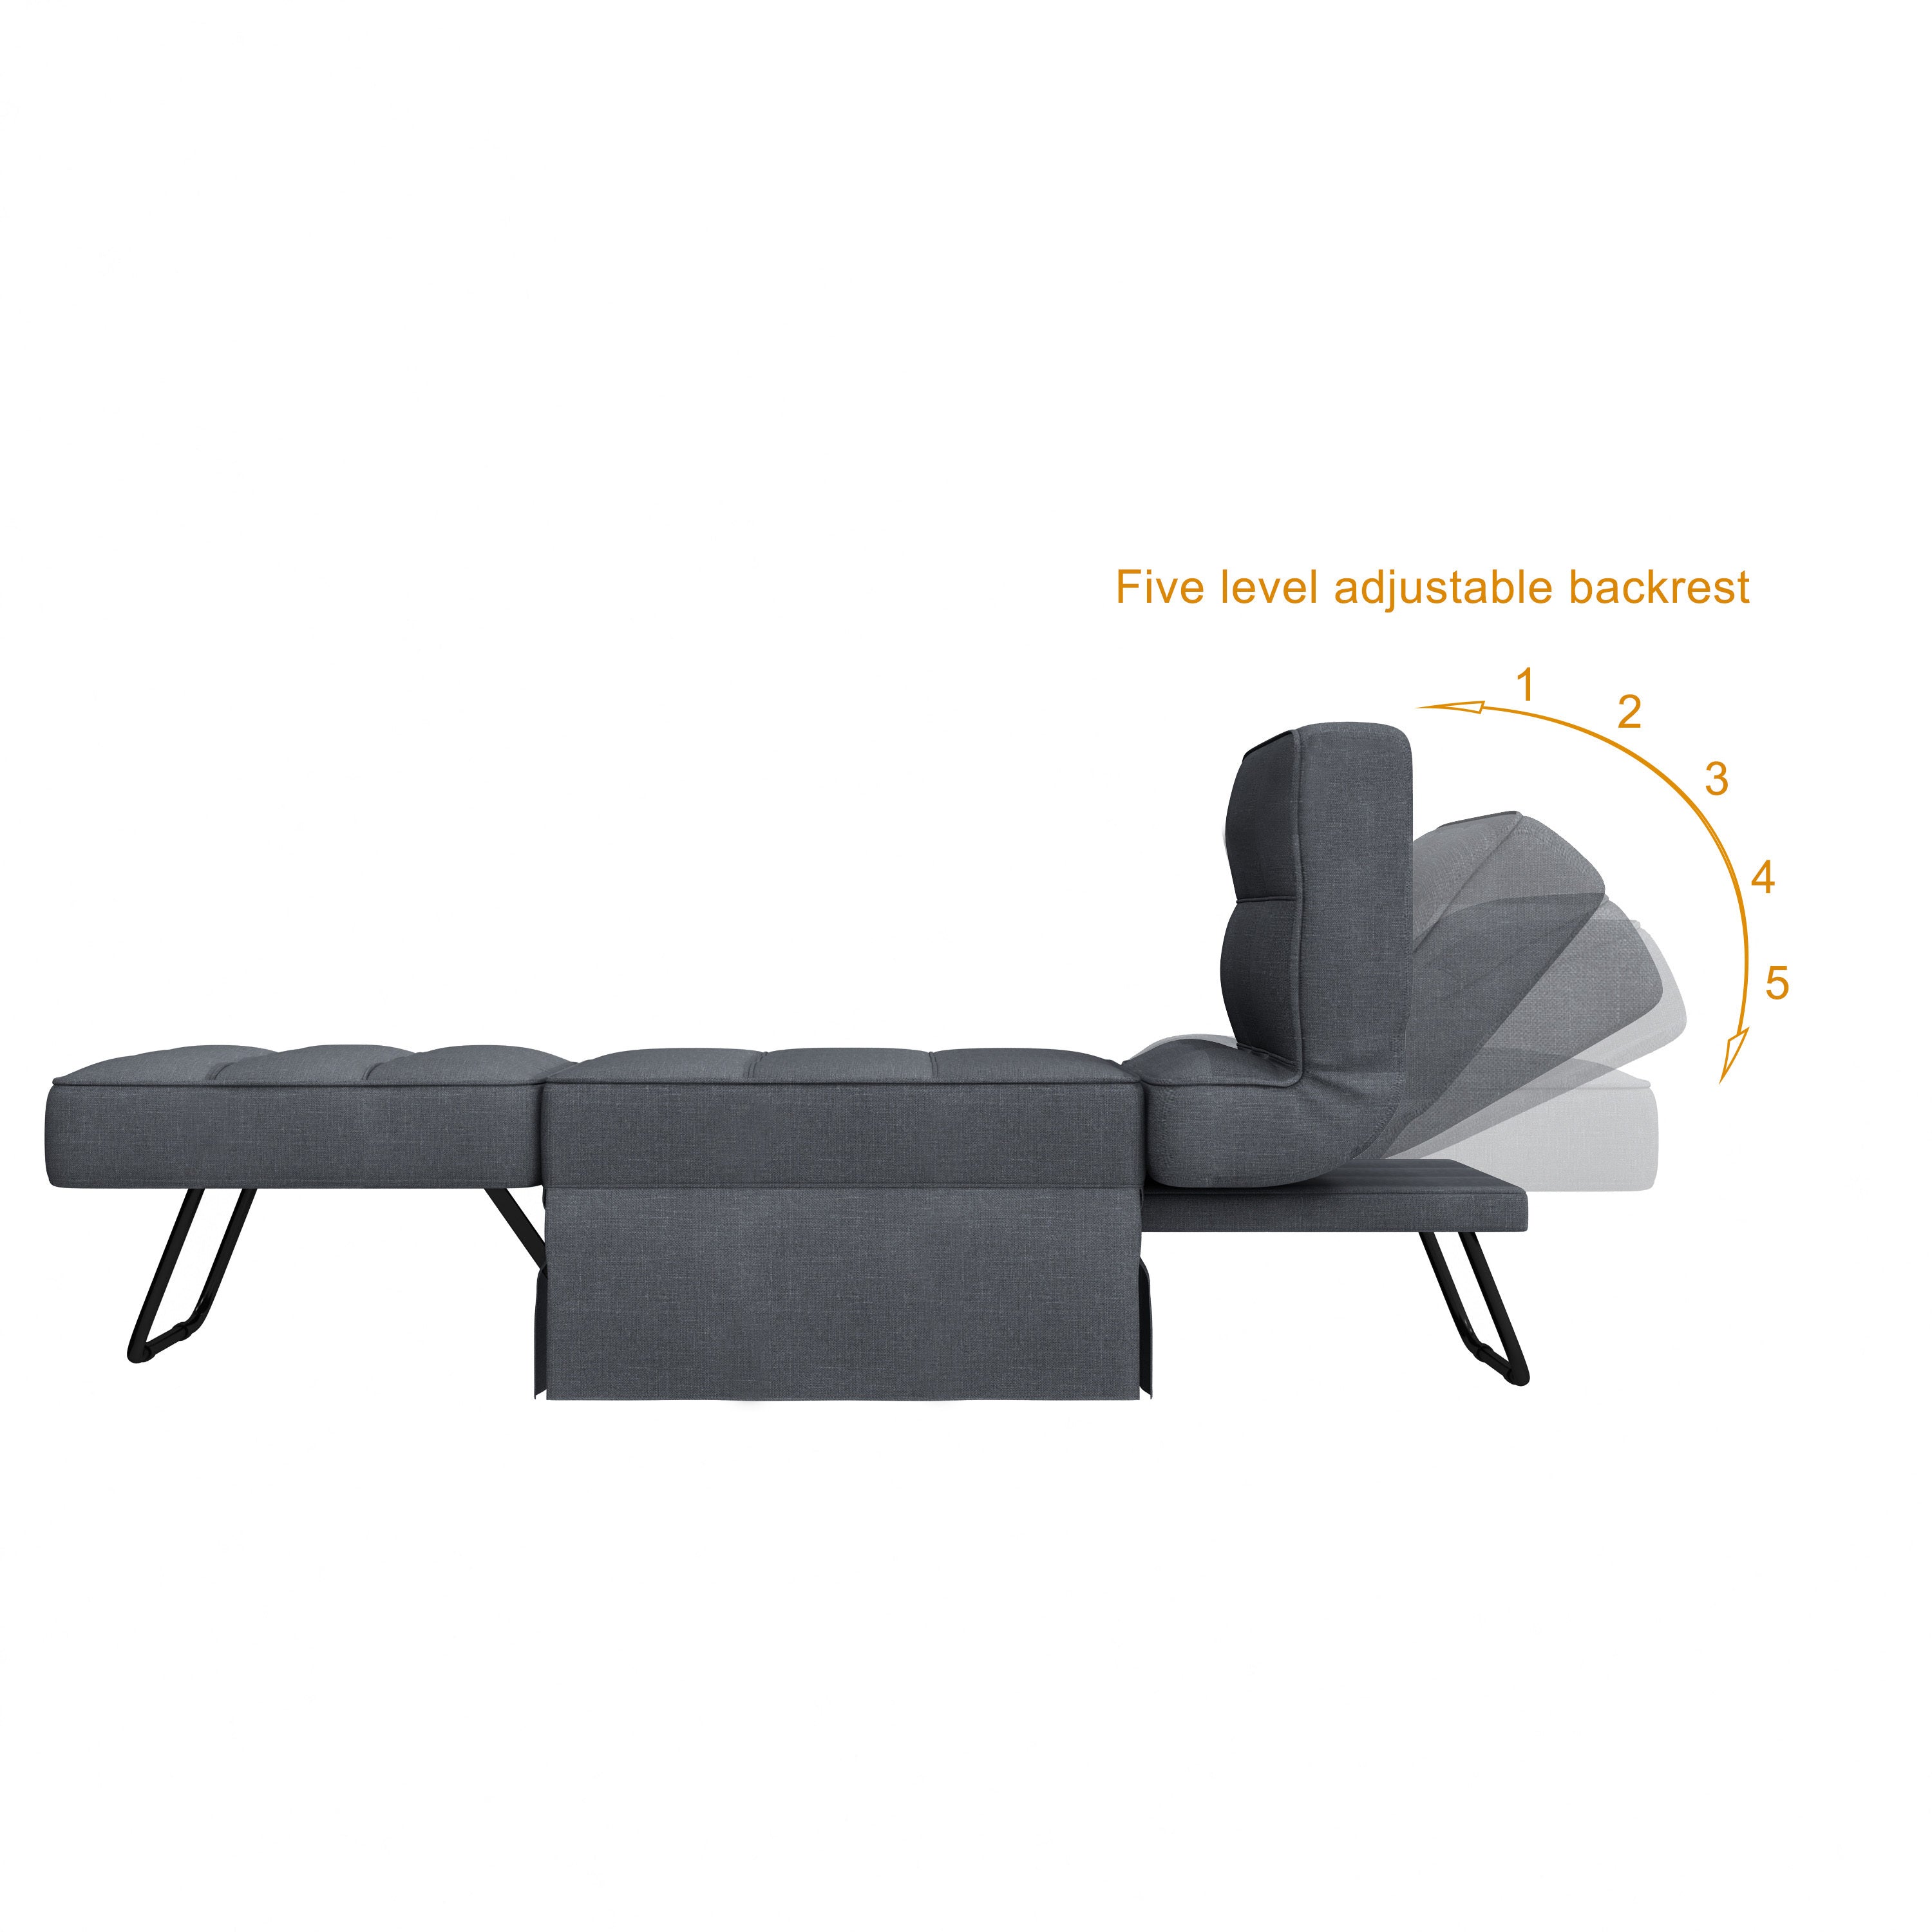 Luma Dark Gray Linen Convertible Sleeper Bed, Lounge Chair, Ottoman